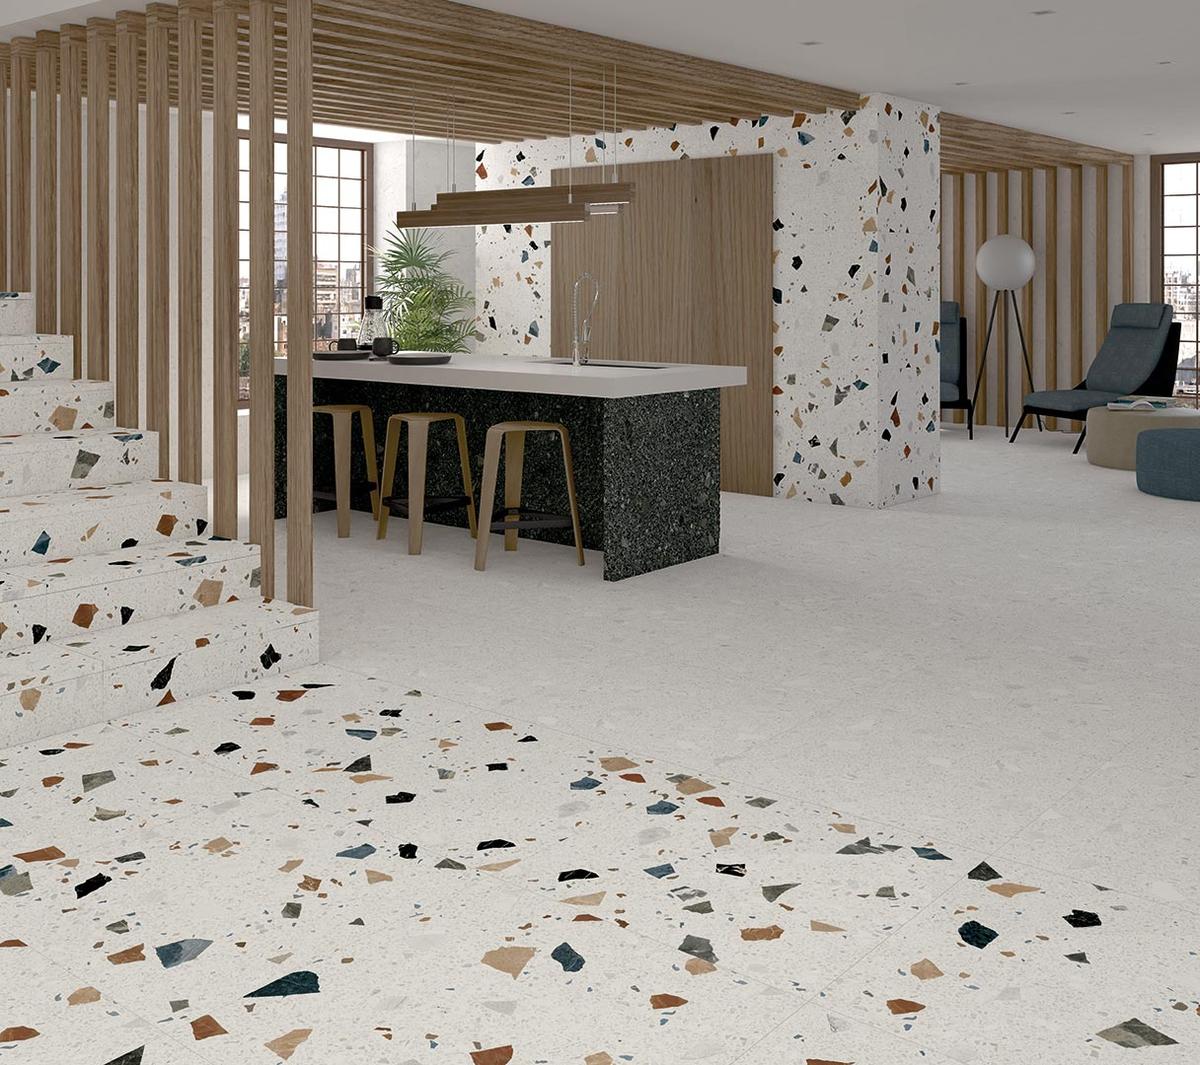 Terrazzo multicouleur avec éclats de marbre 80x80 cm dans une cuisine moderne avec îlot central et tabourets en bois, éclairage naturel